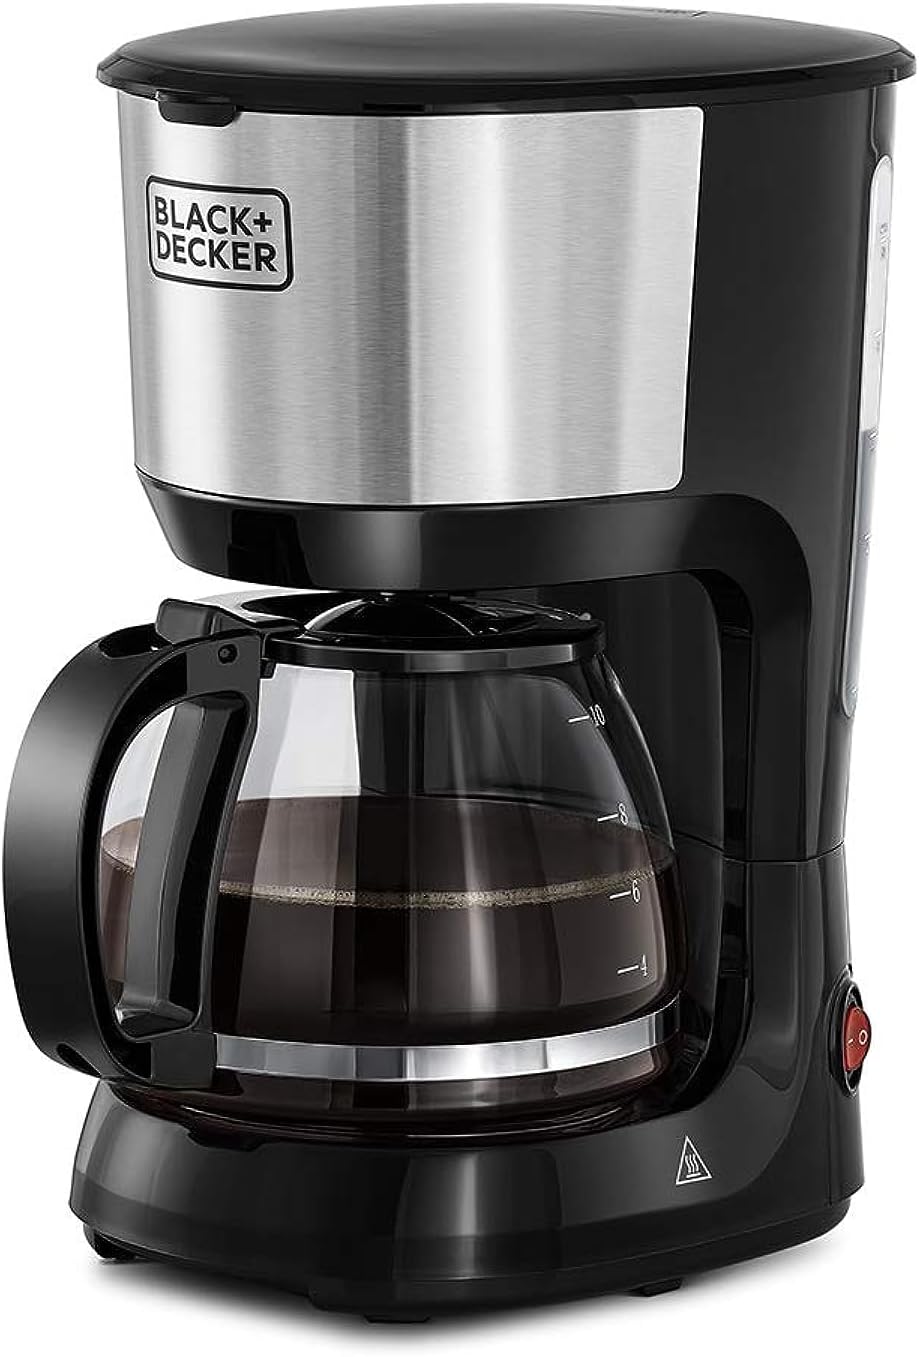 قهوه ساز 10 فنجان با مکانیزم دریپ استاپ بلک اند دکر مدل BLACK+DECKER DCM750S-B5 - ارسال ۱۰ الی ۱۵ روز کاری